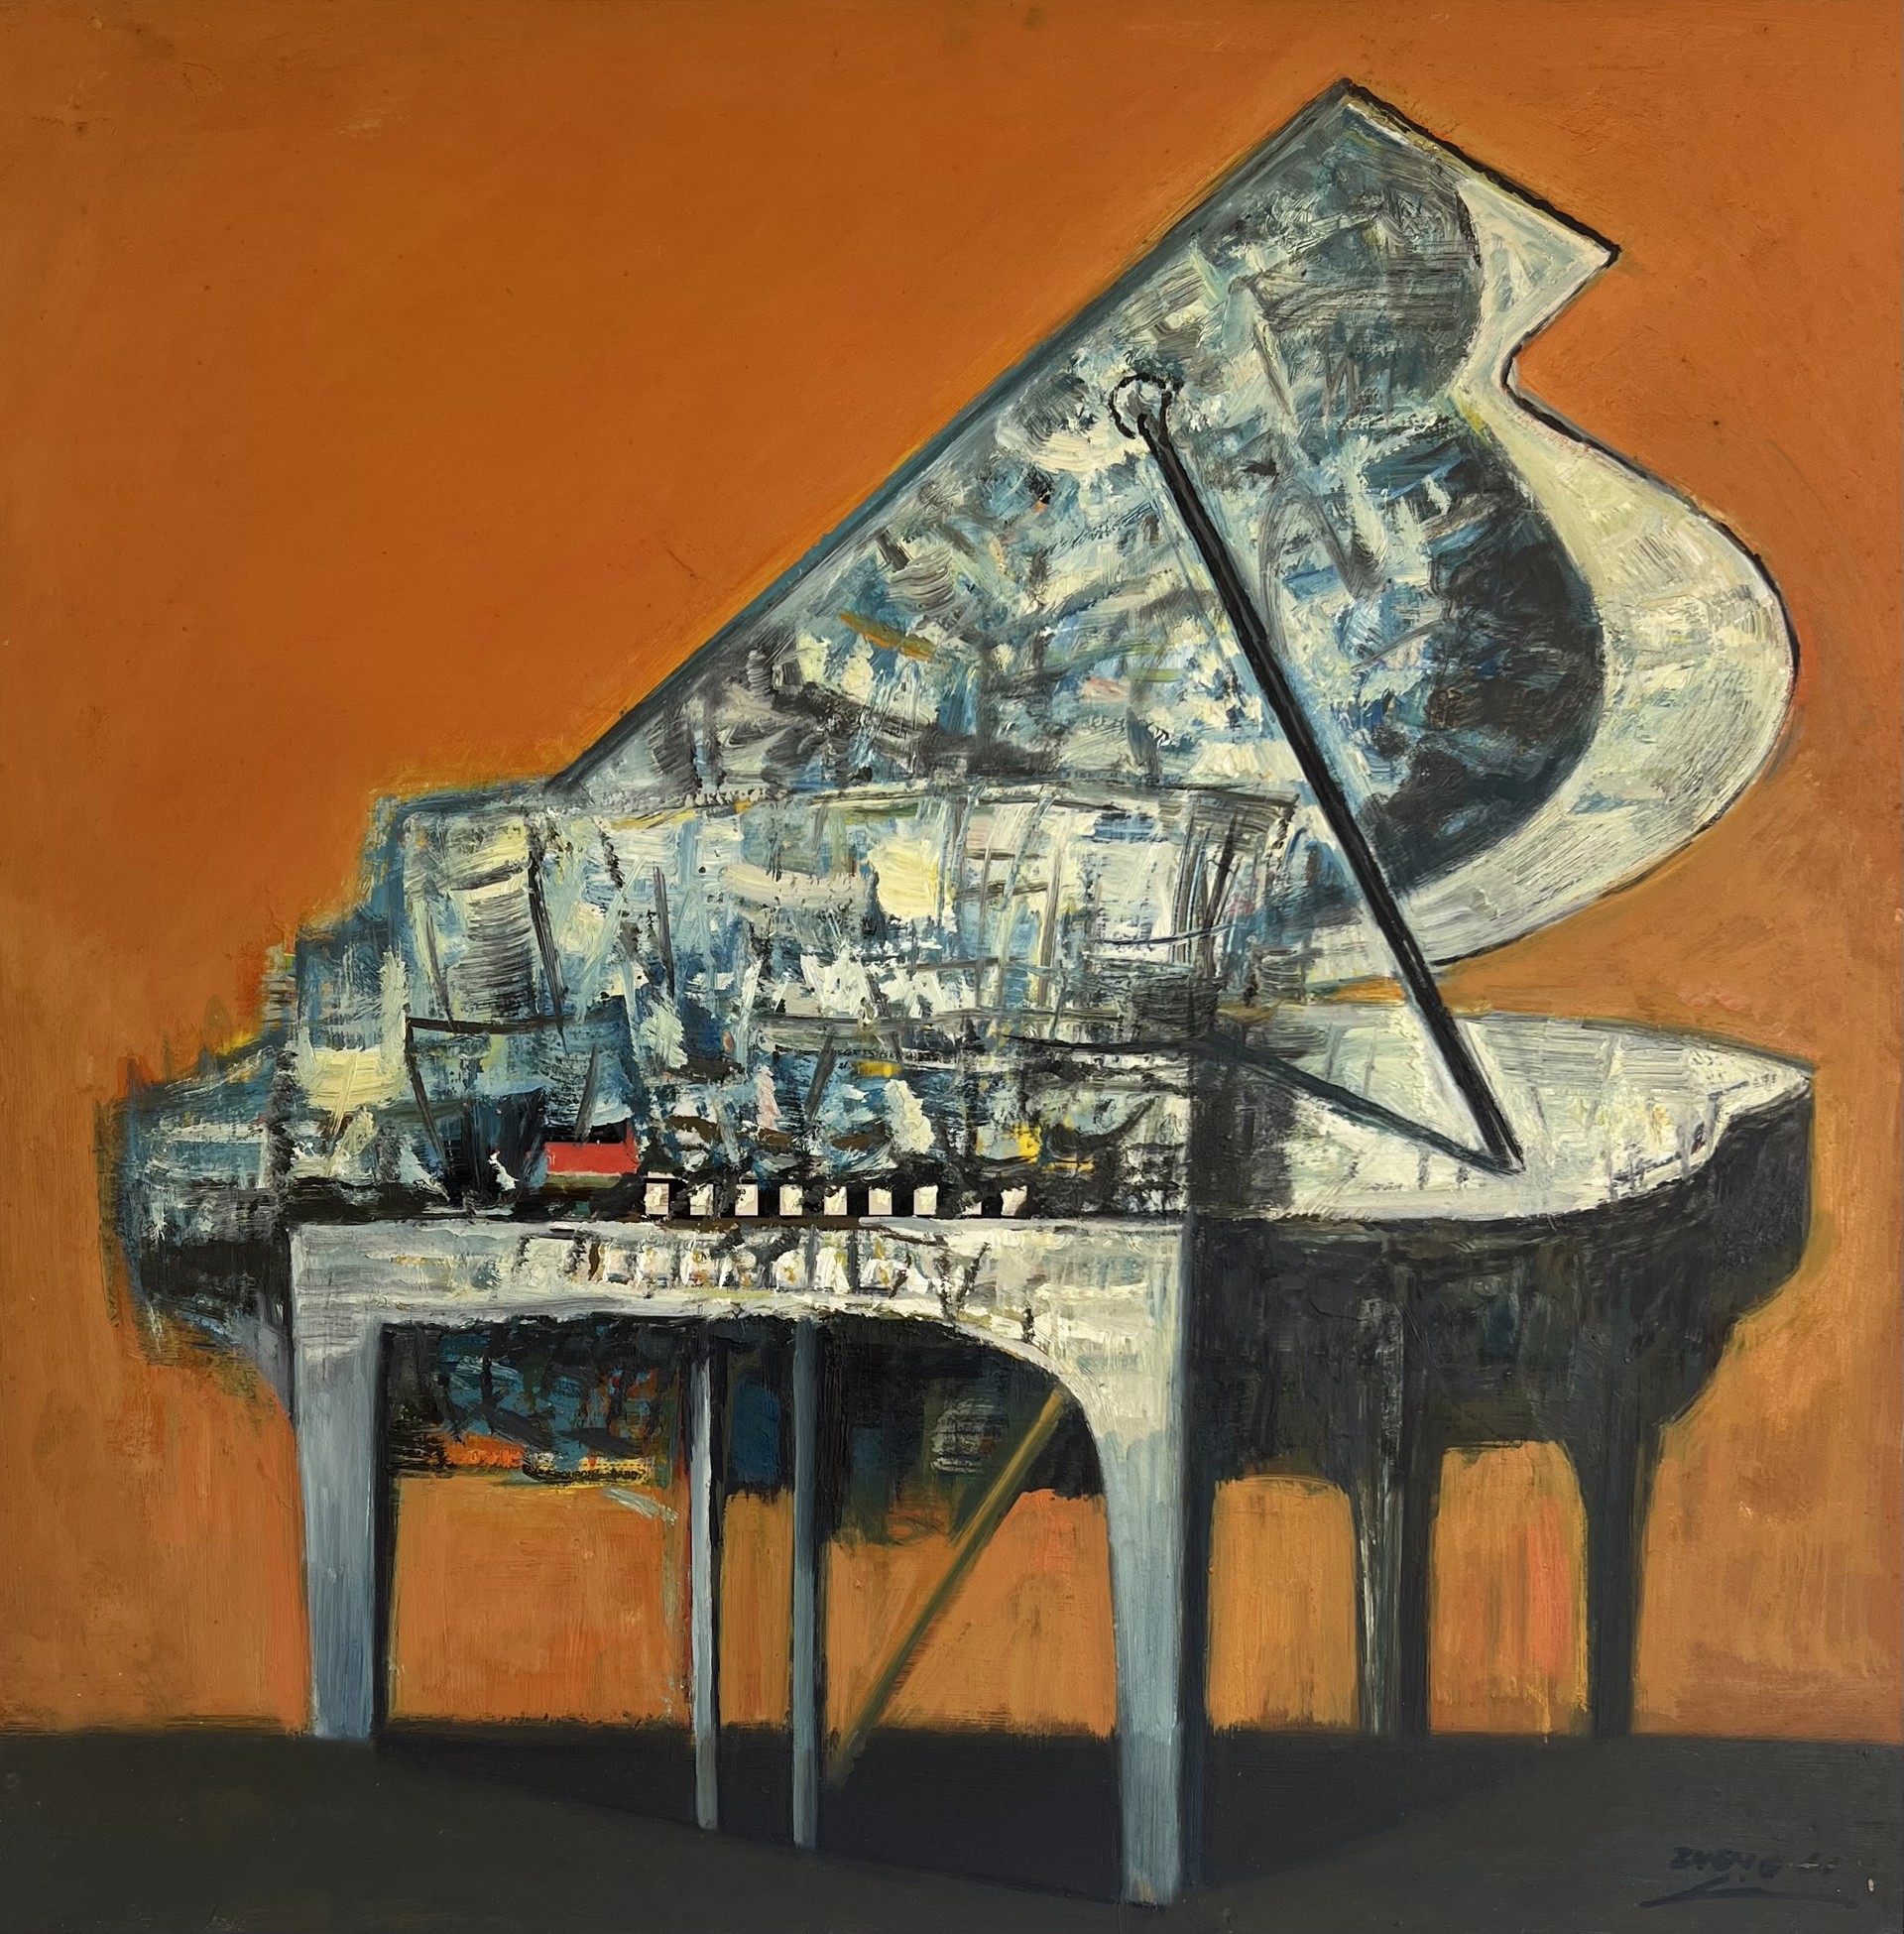 Piano #2 by ZHENG LI